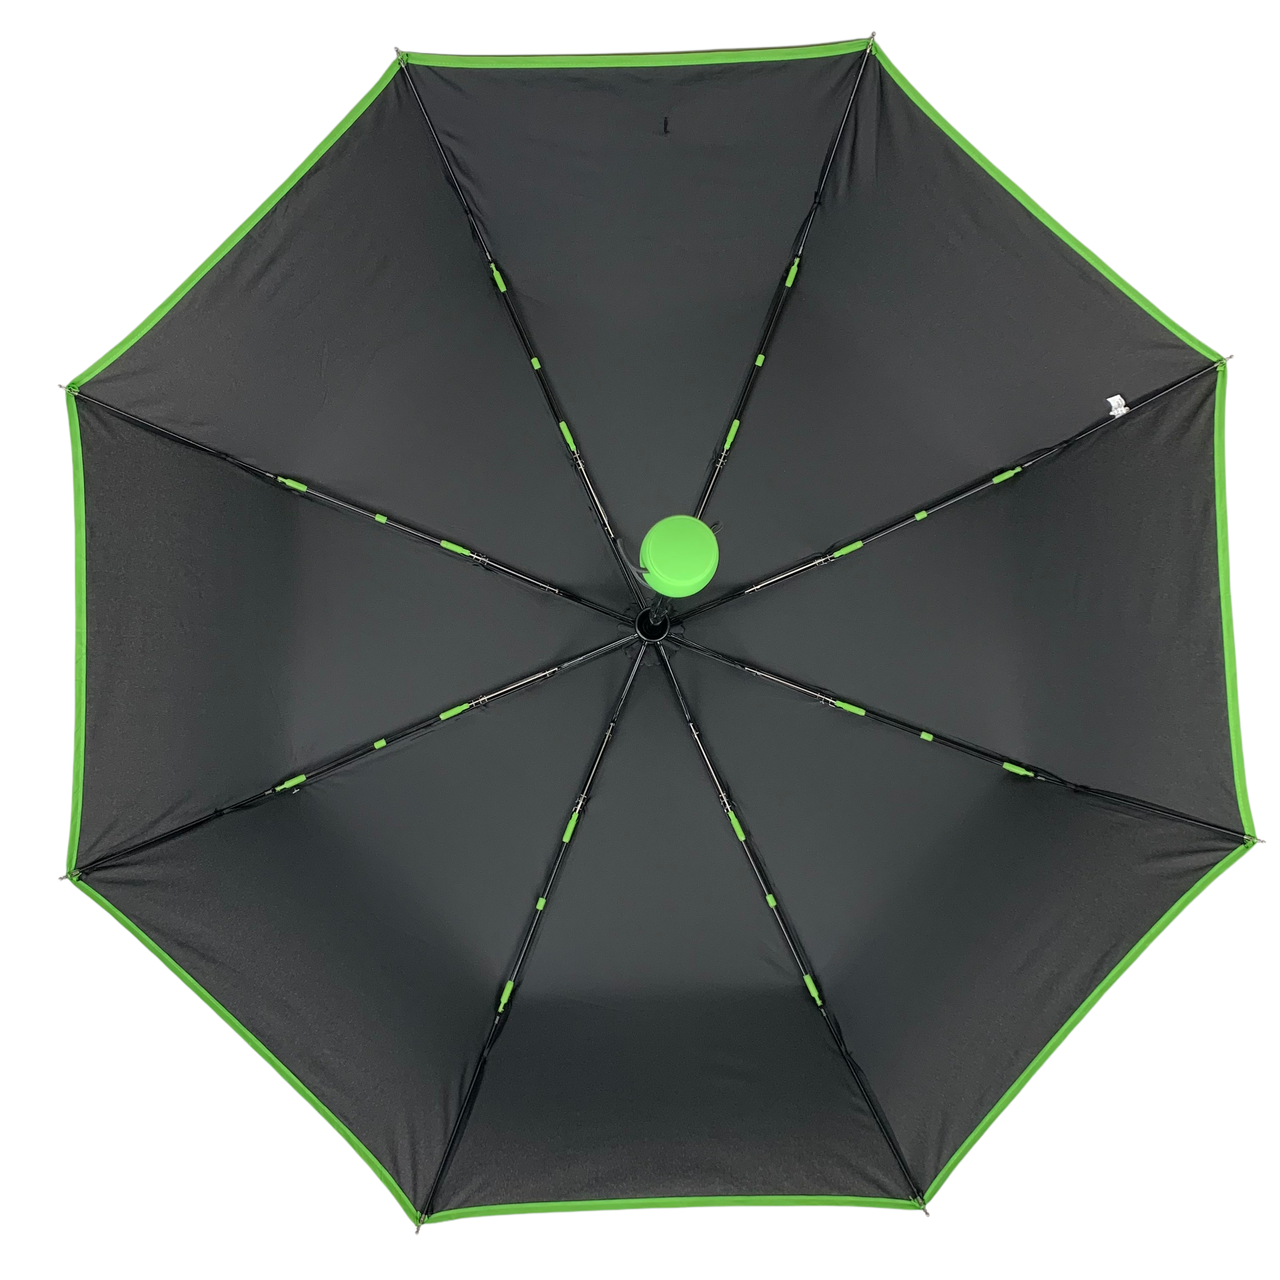 Складной зонтик полный автомат Susino 96 см зеленый - фото 4